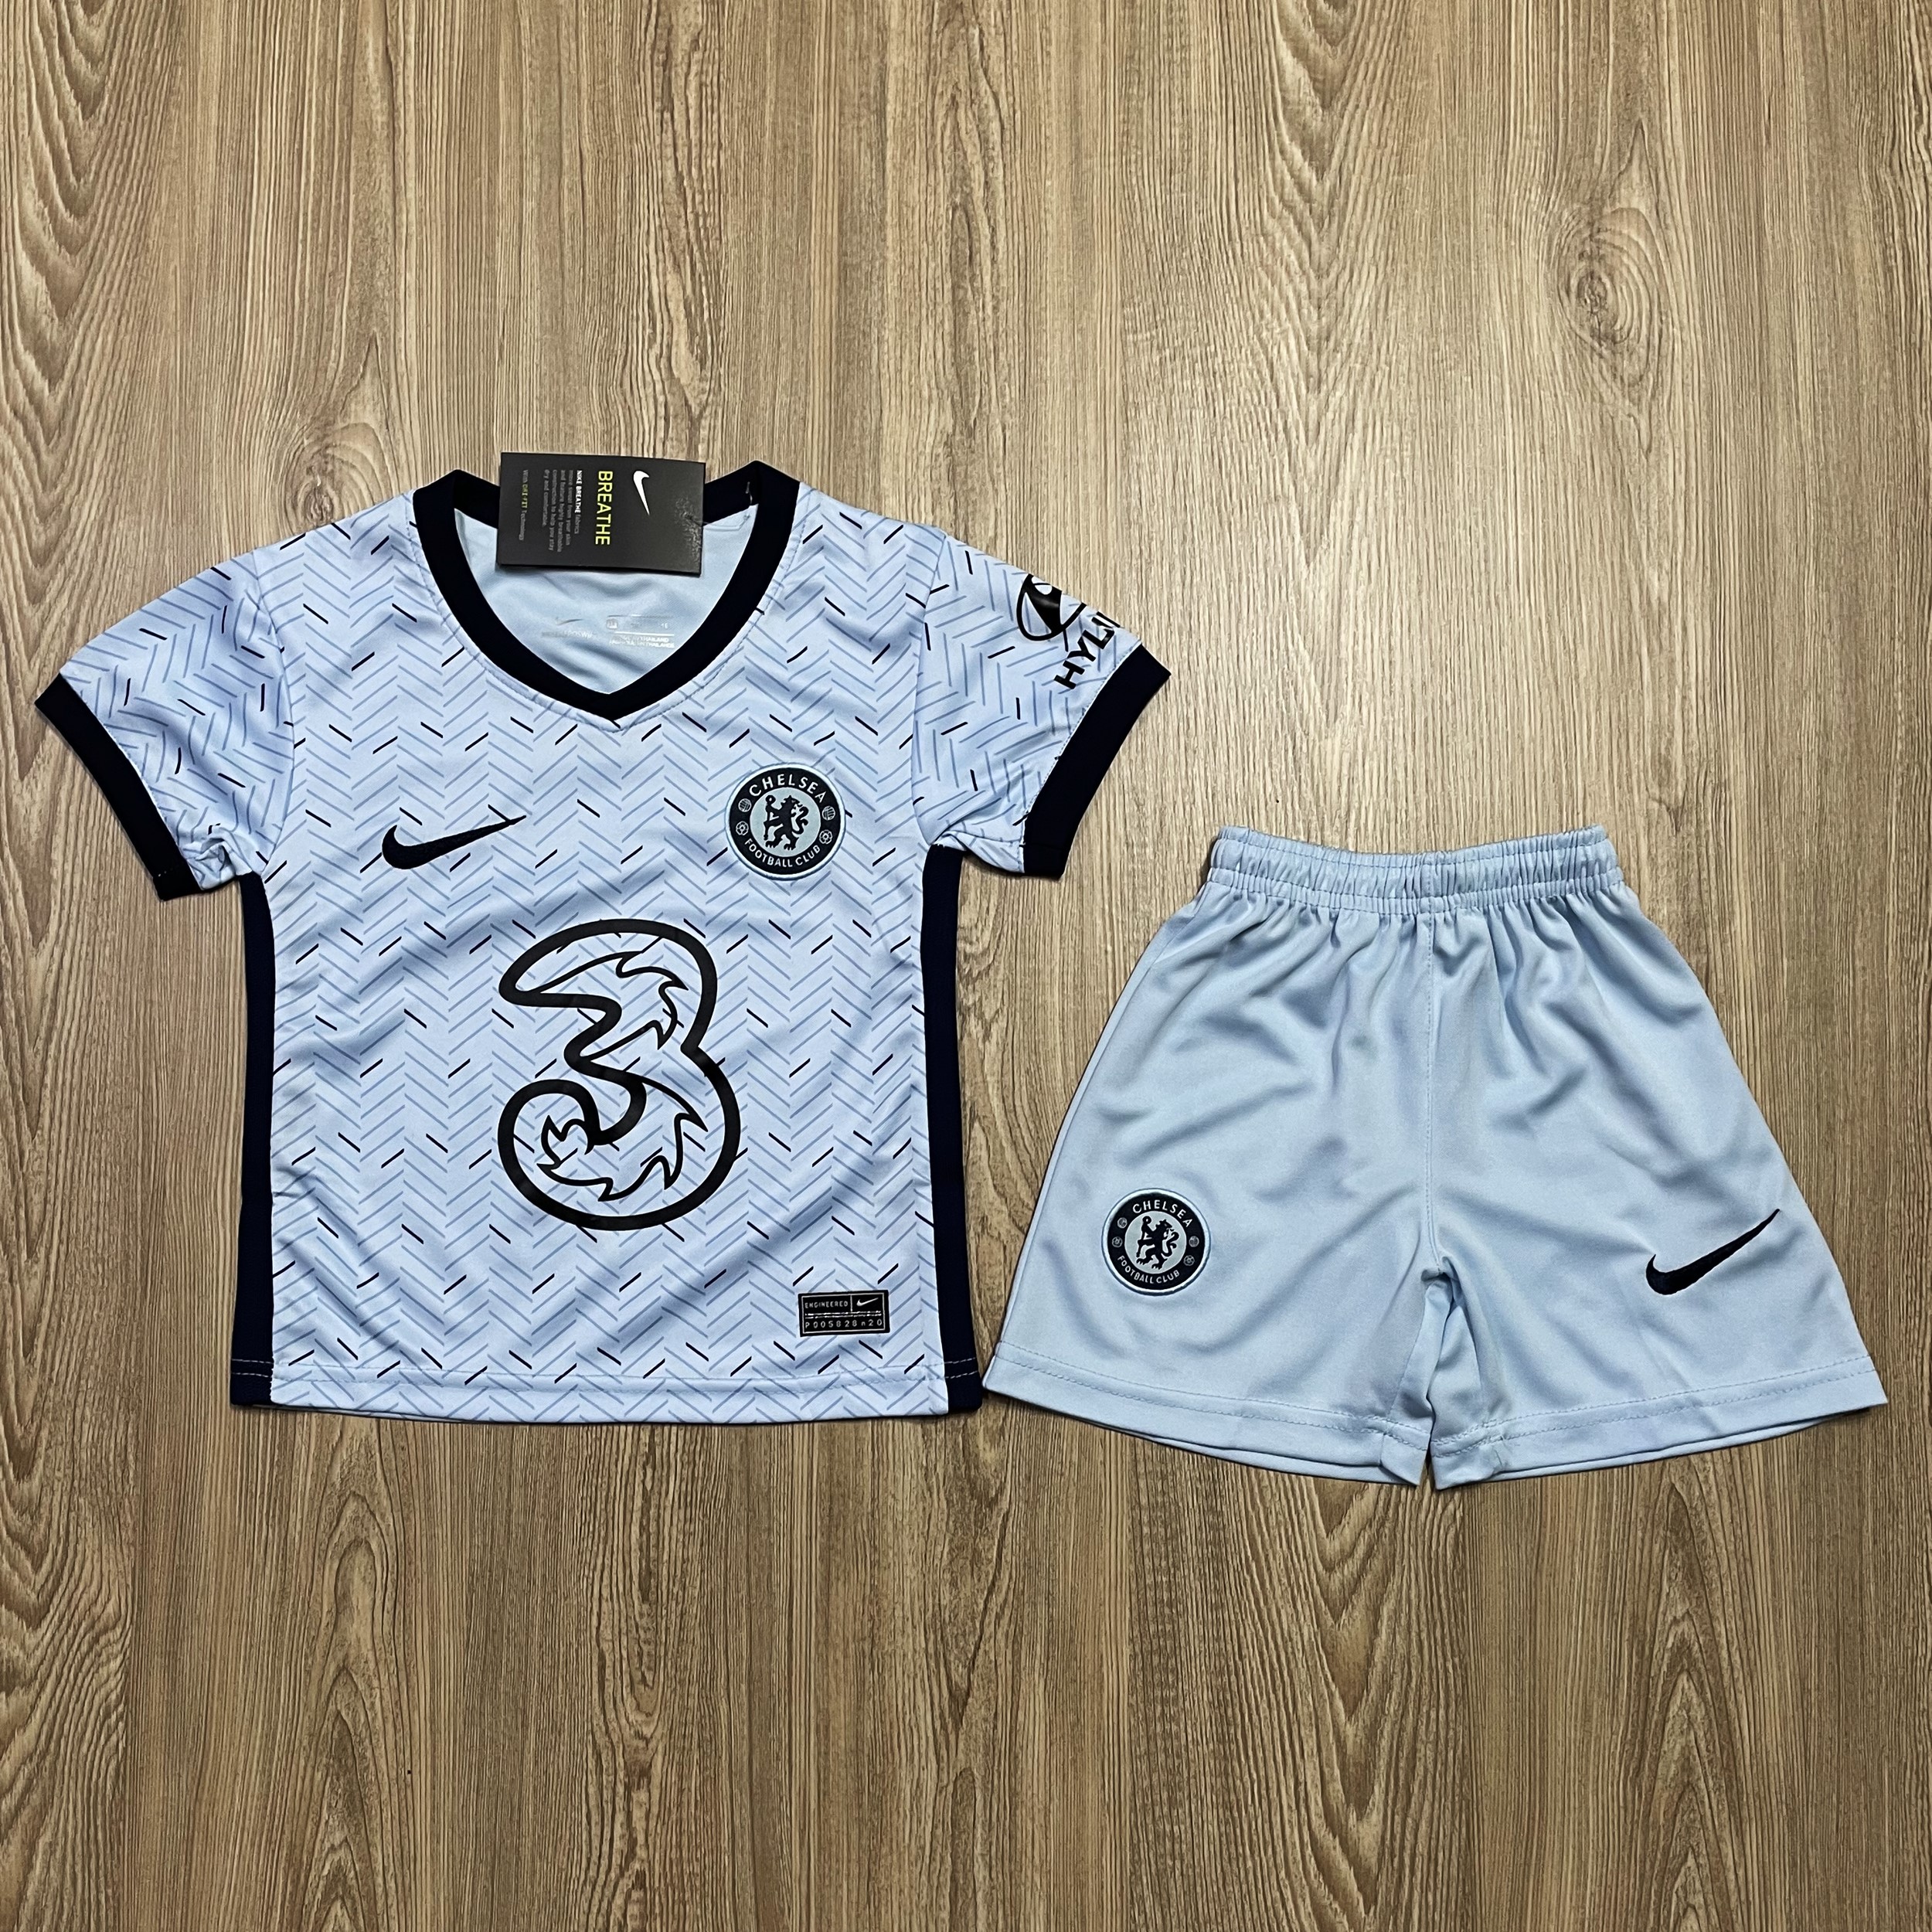 ชุดบอลเด็ก Chelsea ชุดกีฬาเด็กทีม เสื้อทีมเชลซี   ซื้อครั้งเดียวได้ทั้งชุด (เสื้อ+กางเกง) ตัวเดียวในราคาส่ง สินค้าเกรด-AAA